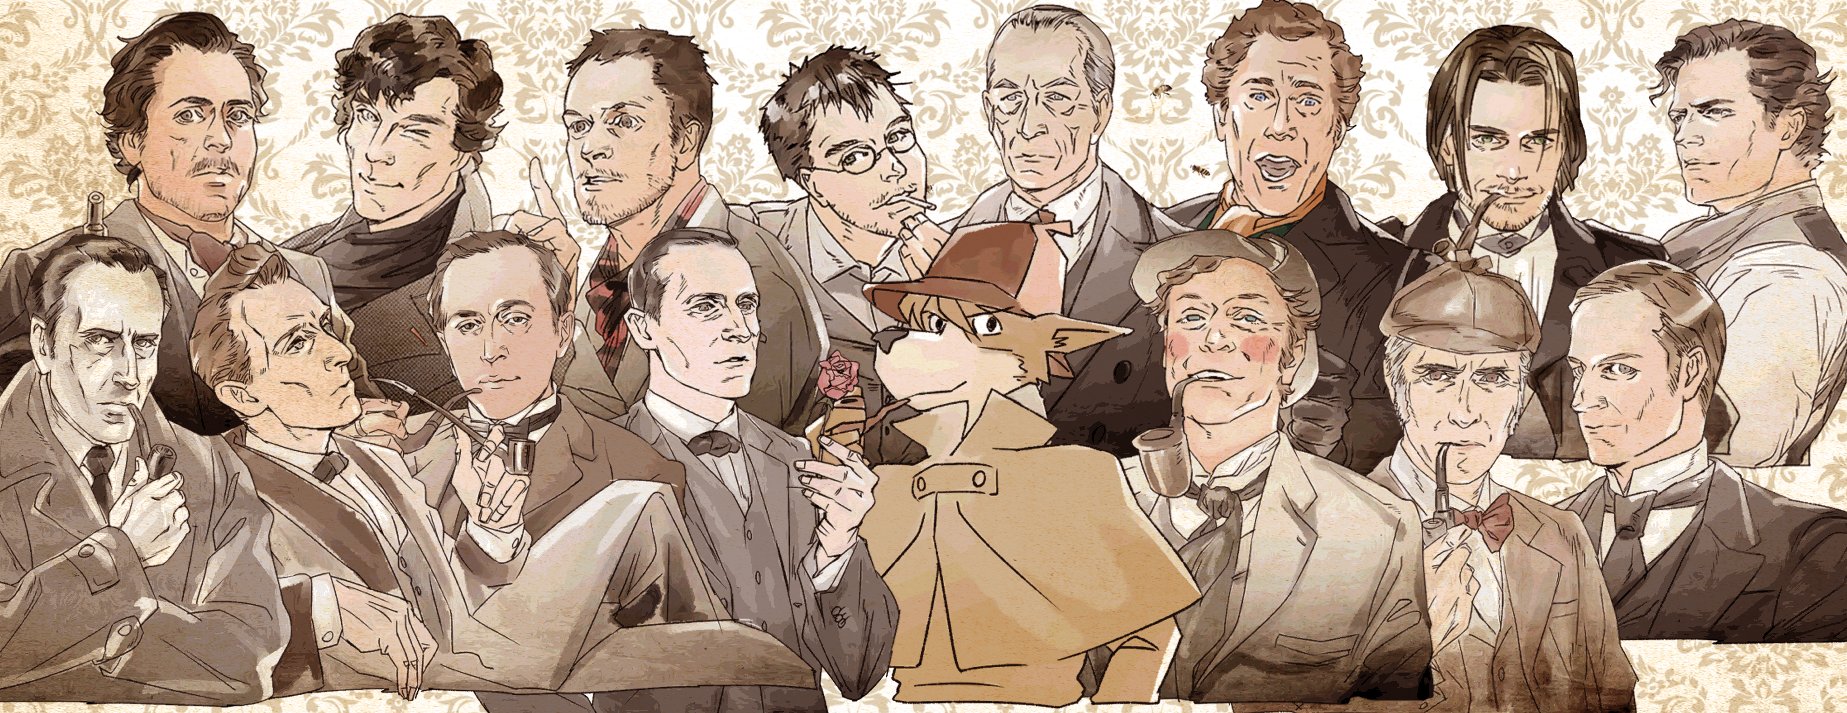 諏岸 1月6日はシャーロック ホームズのお誕生日と言われているそうなので 15人 1匹のホームズ ワトソン のイラスト 動画をお祝いに貼っておきますね どのホームズもいっぱい好き コナン ドイルが生み出した名探偵 シャーロック ホームズ 新旧